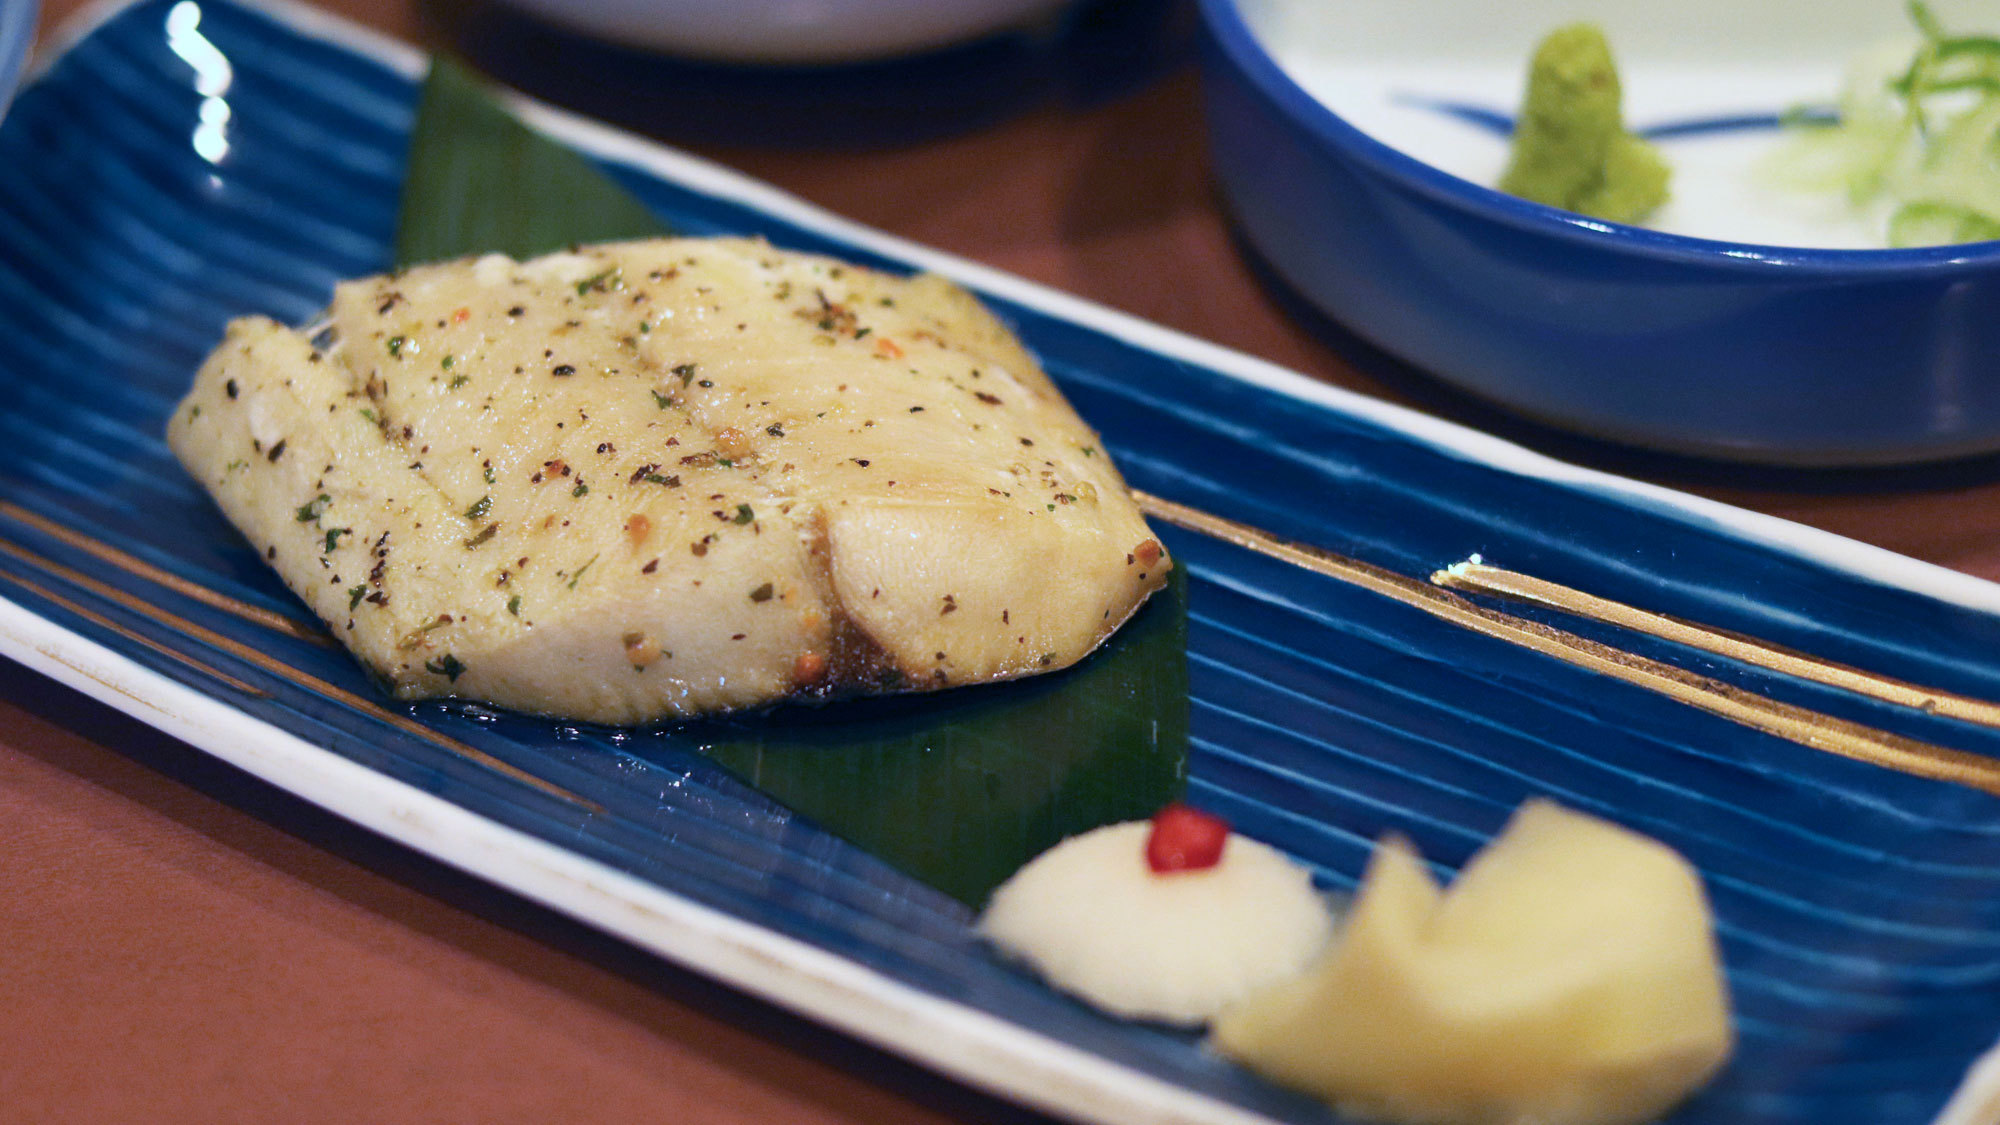 【いわや木曽路料理】焼魚一例。